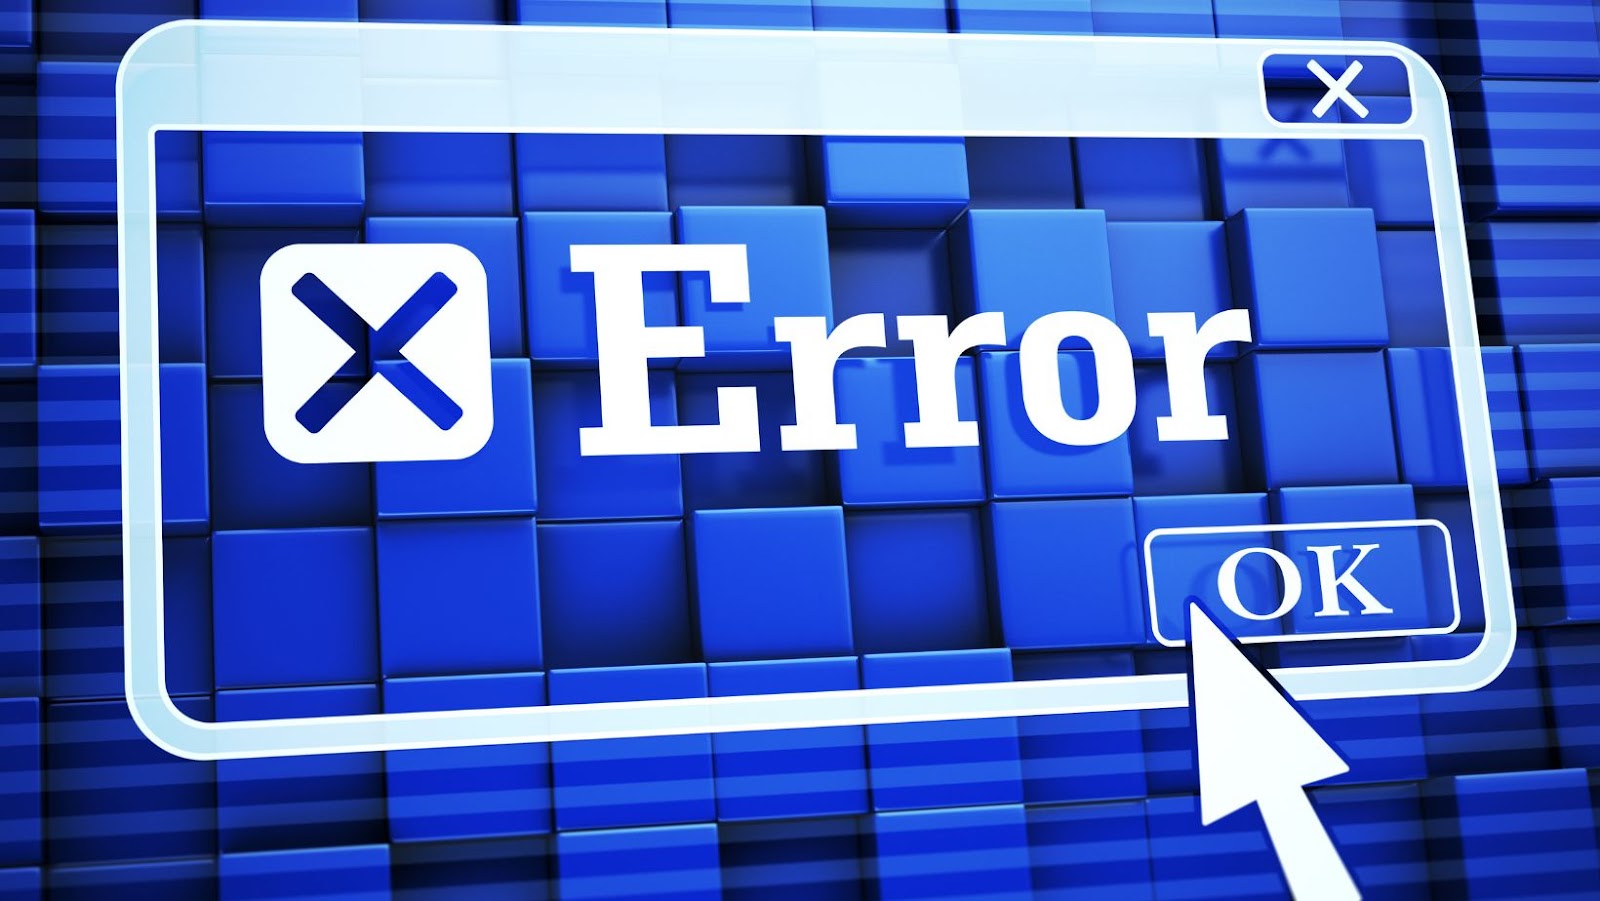 errordomain=nscocoaerrordomain&errormessage=kunne ikke finde den anførte genvej.&errorcode=4